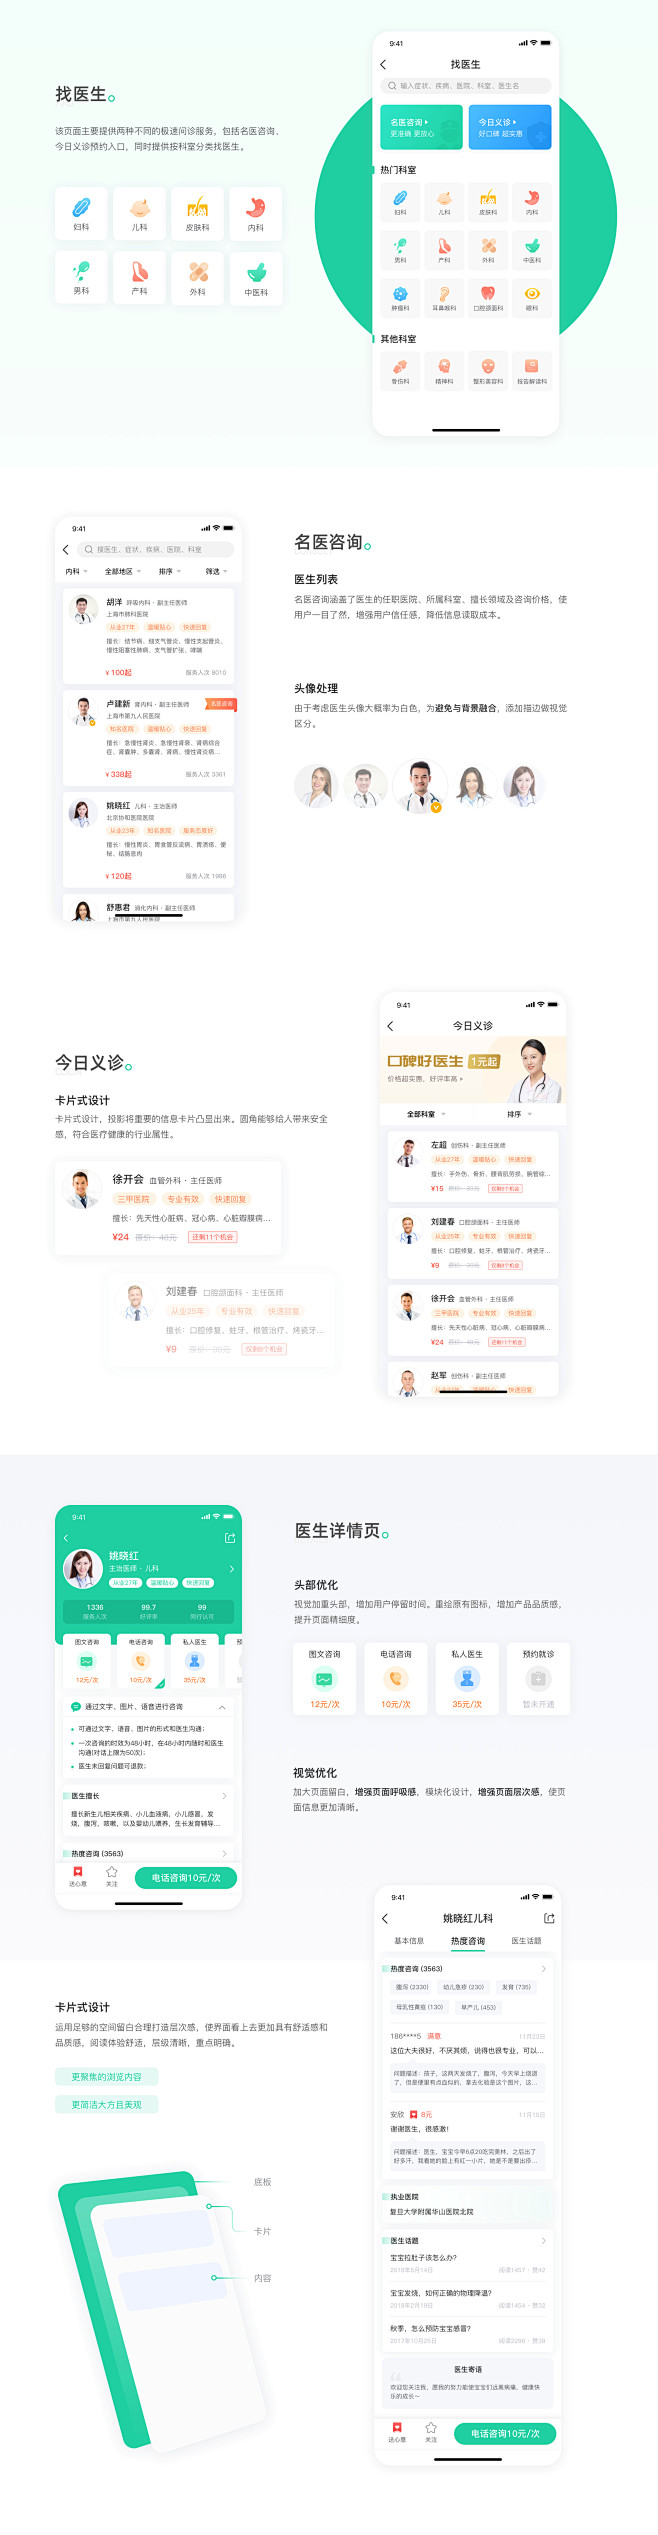 医疗APP改版设计-UI中国用户体验设计...